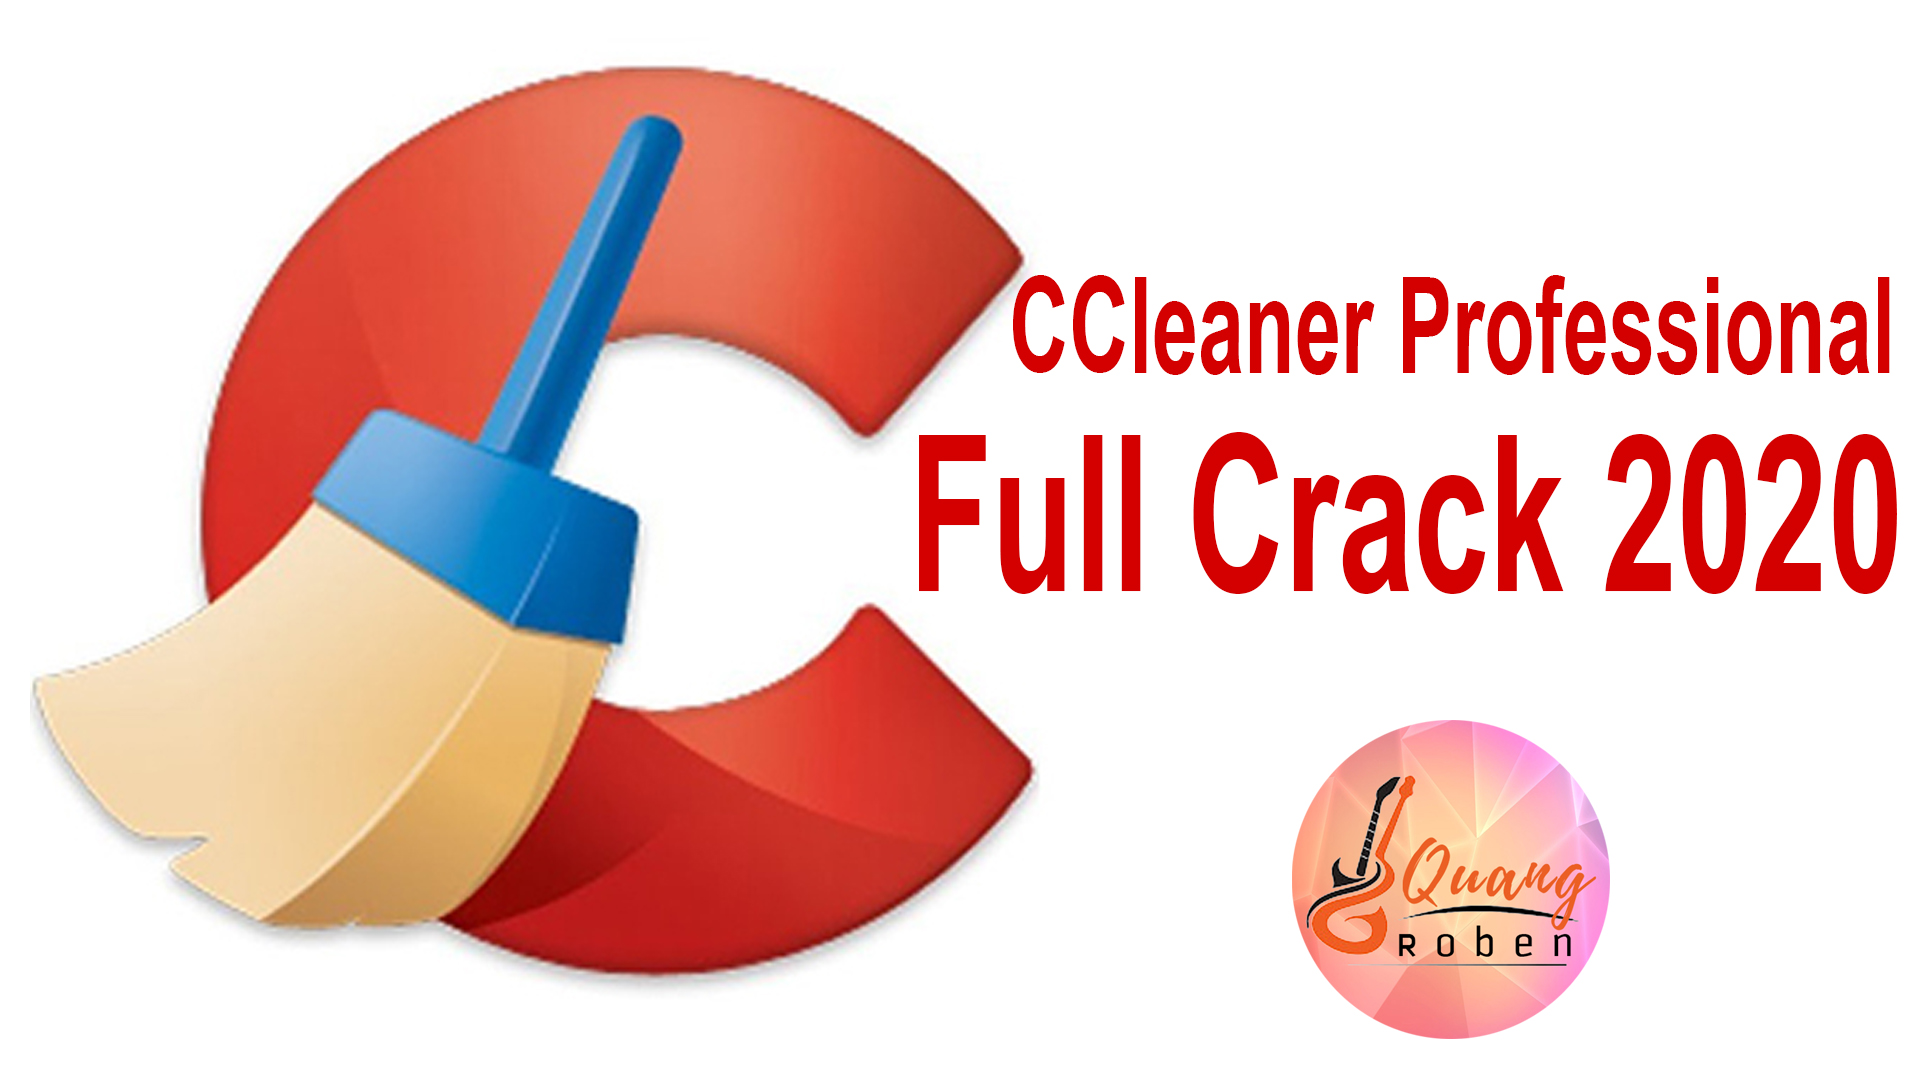 ccleaner professional full crack